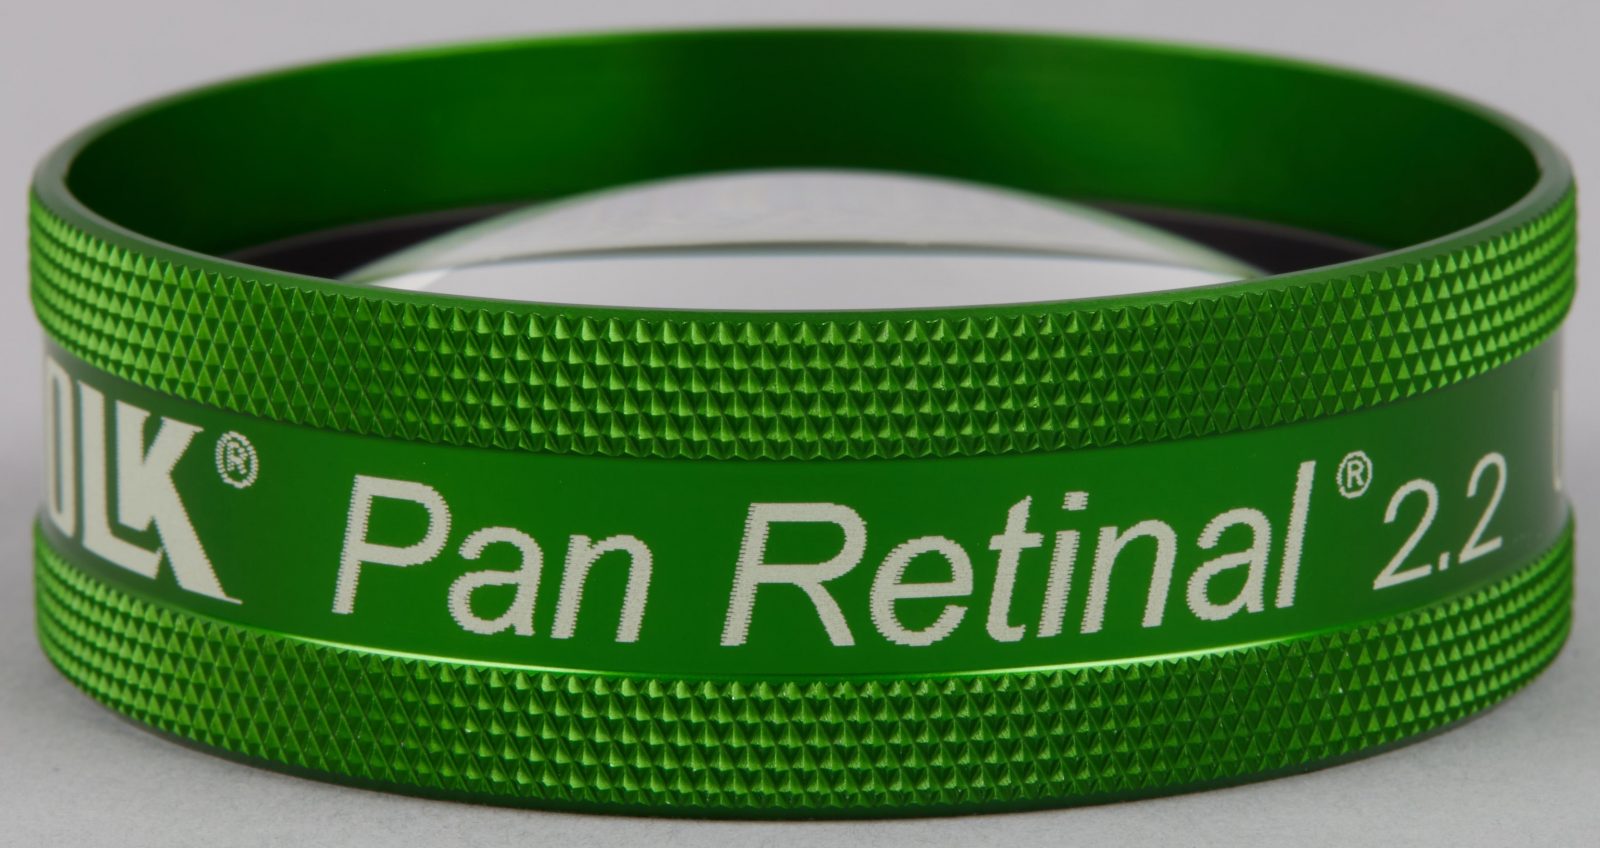 Pan Retinal® 2.2 (Green Ring)